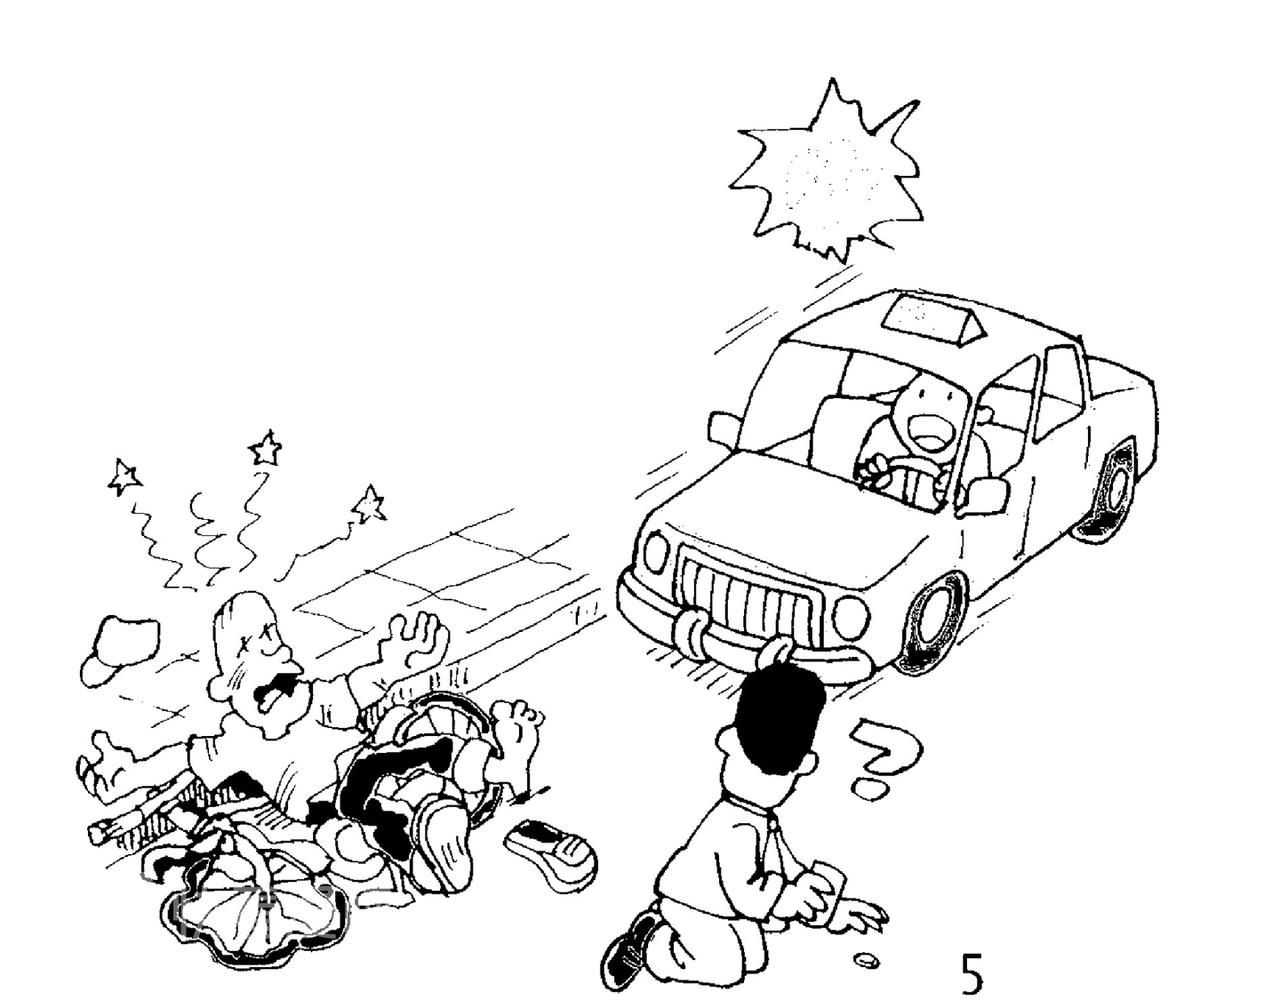 幽默漫畫系列 - 與車有關 - 4